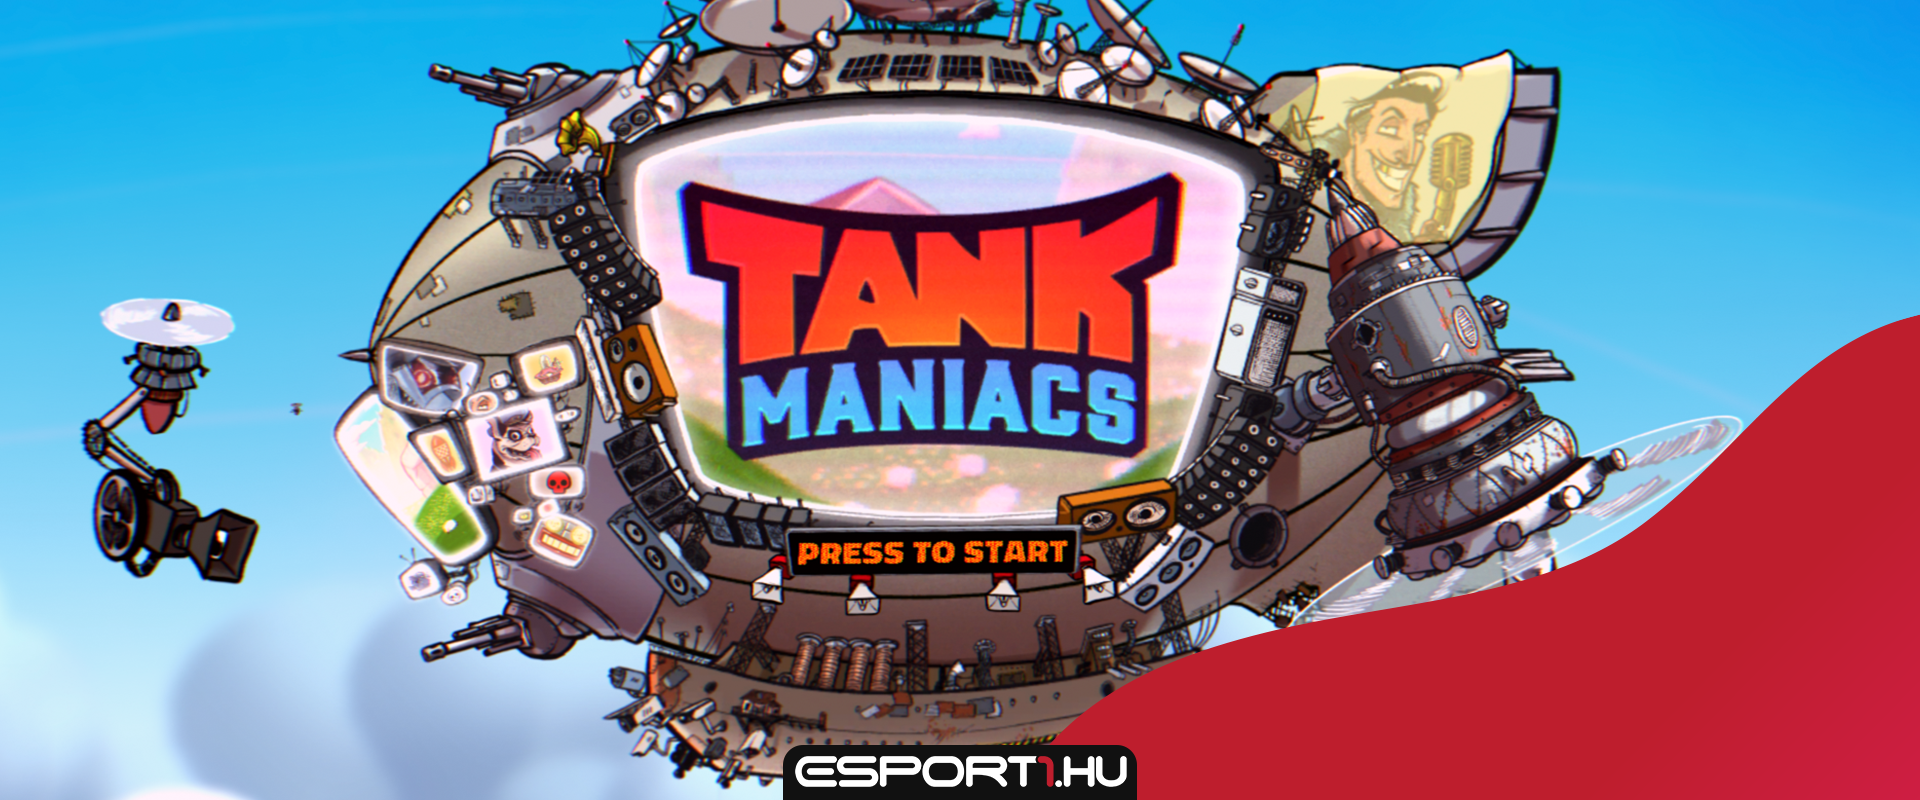 Ingyen kipróbálható a magyar fejlesztésű Tank Maniacs